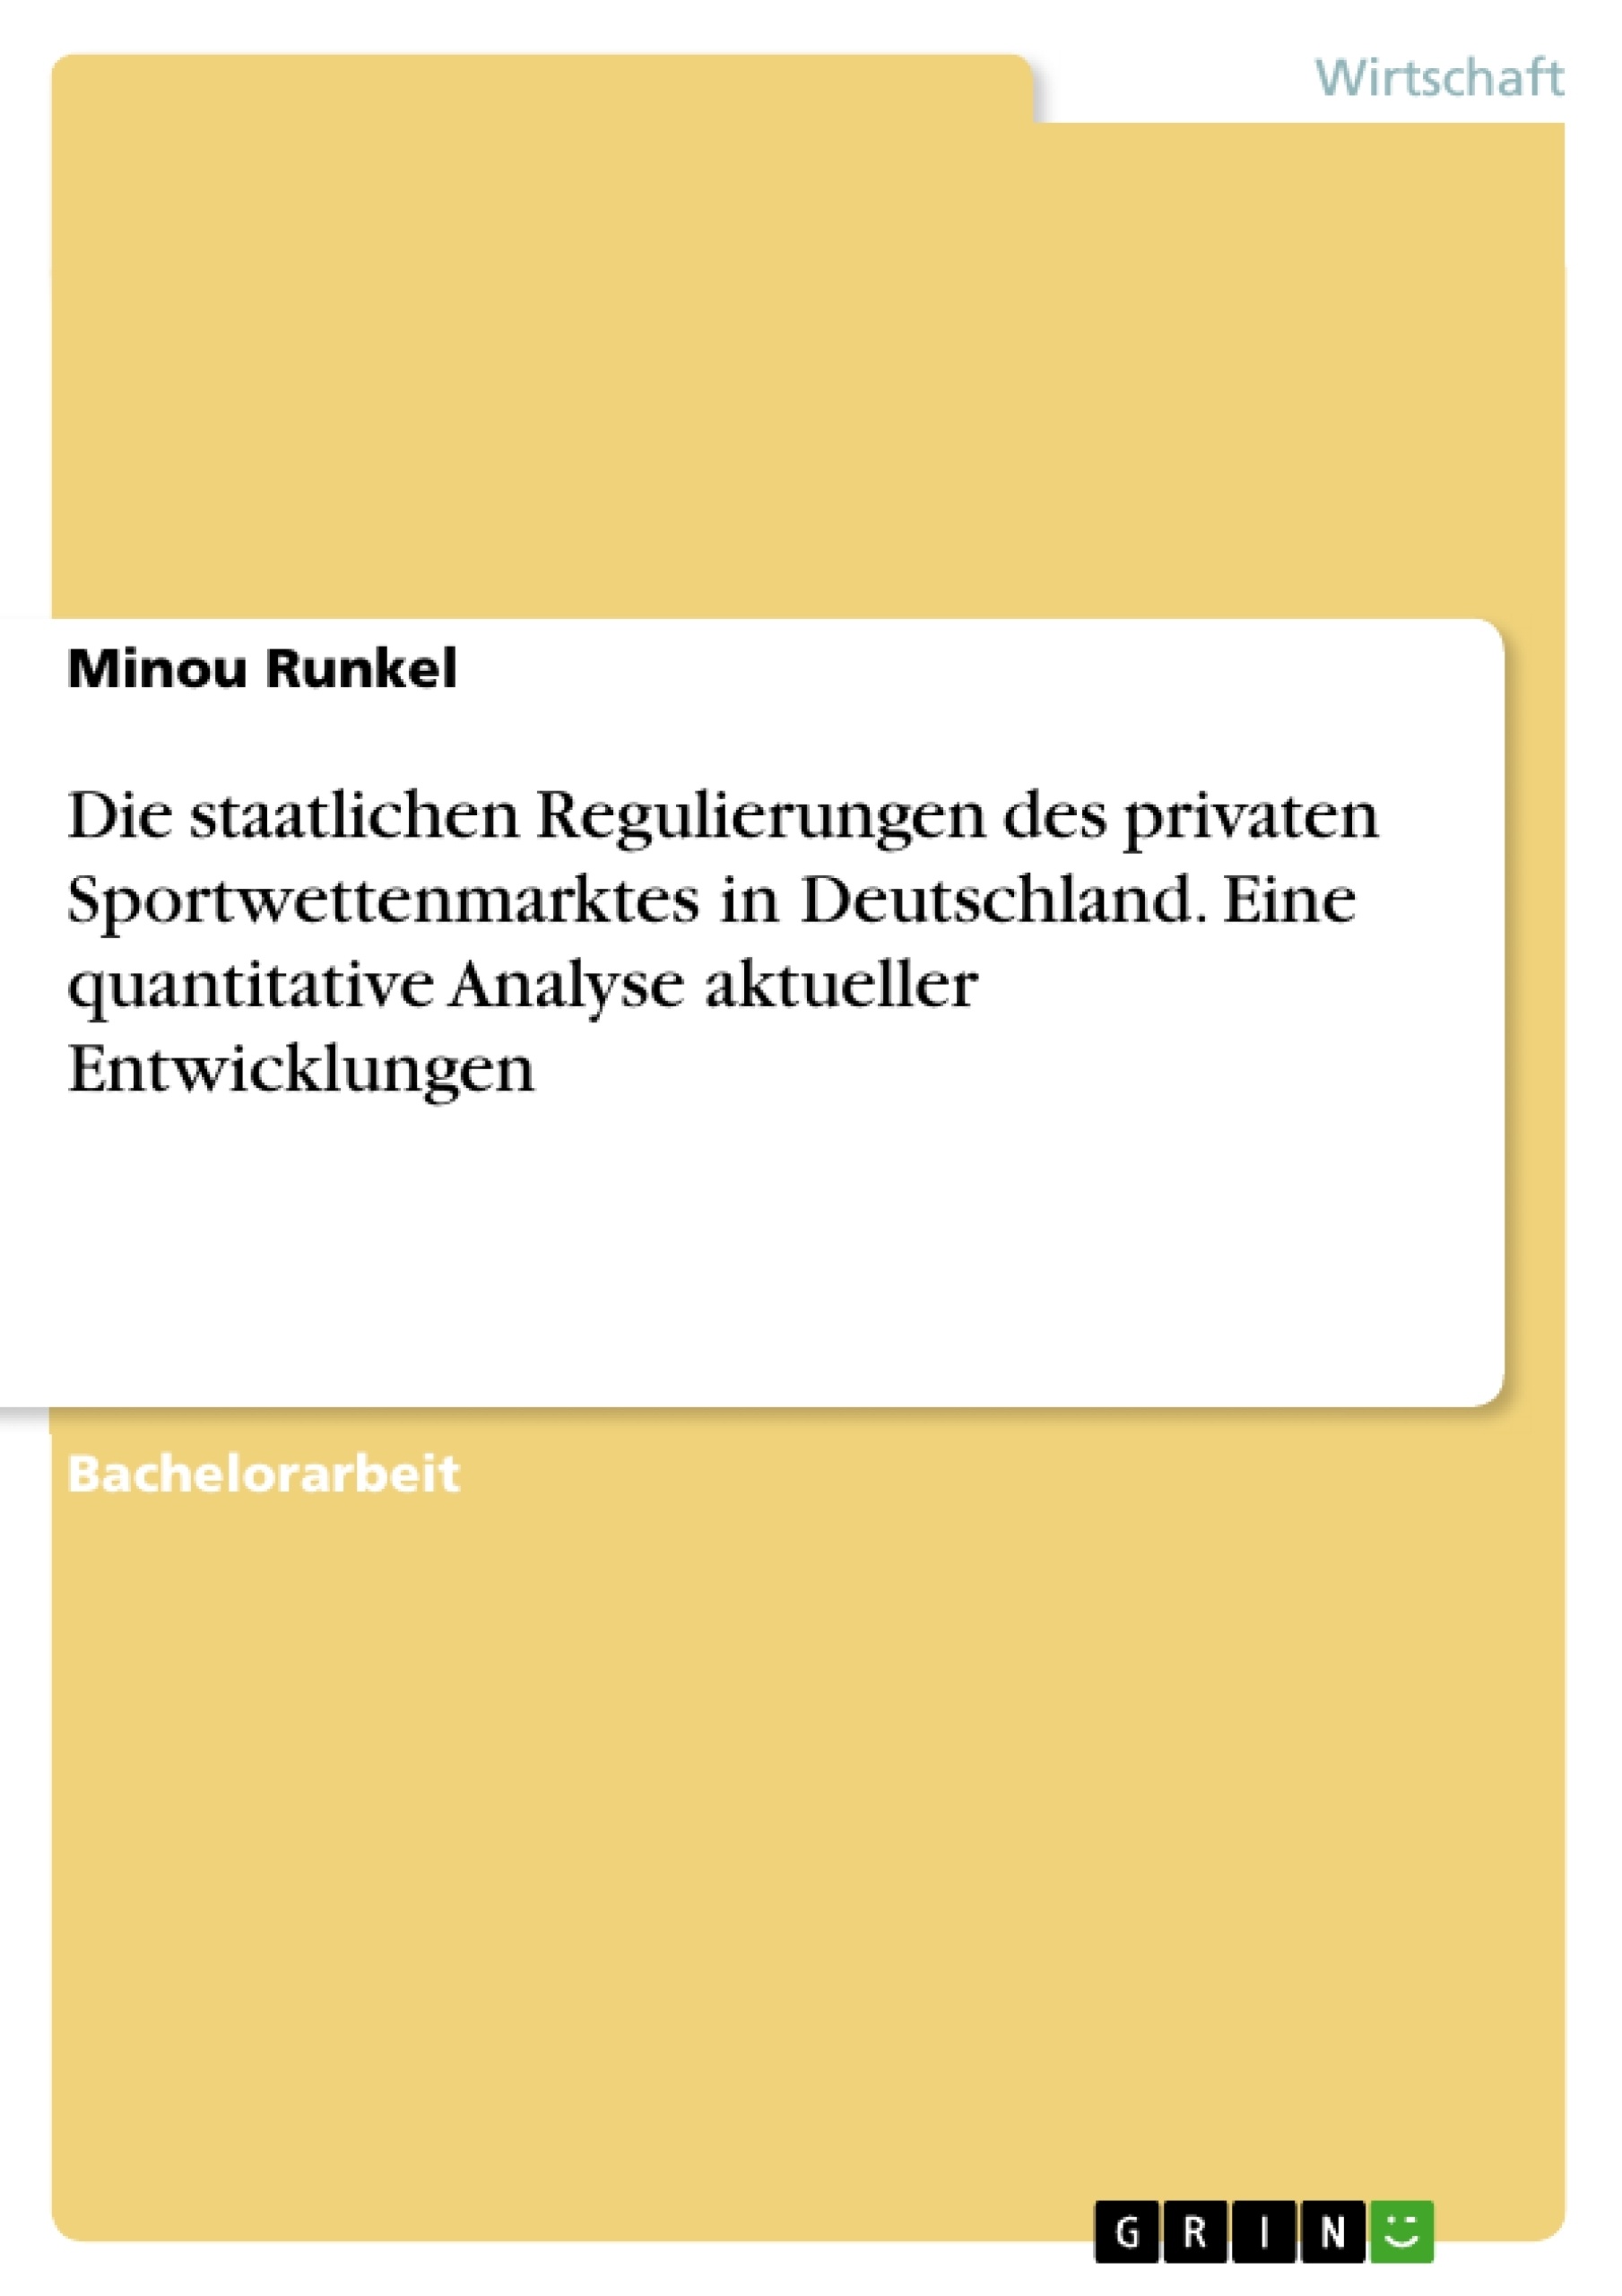 Título: Die staatlichen Regulierungen des privaten Sportwettenmarktes in Deutschland. Eine quantitative Analyse aktueller Entwicklungen